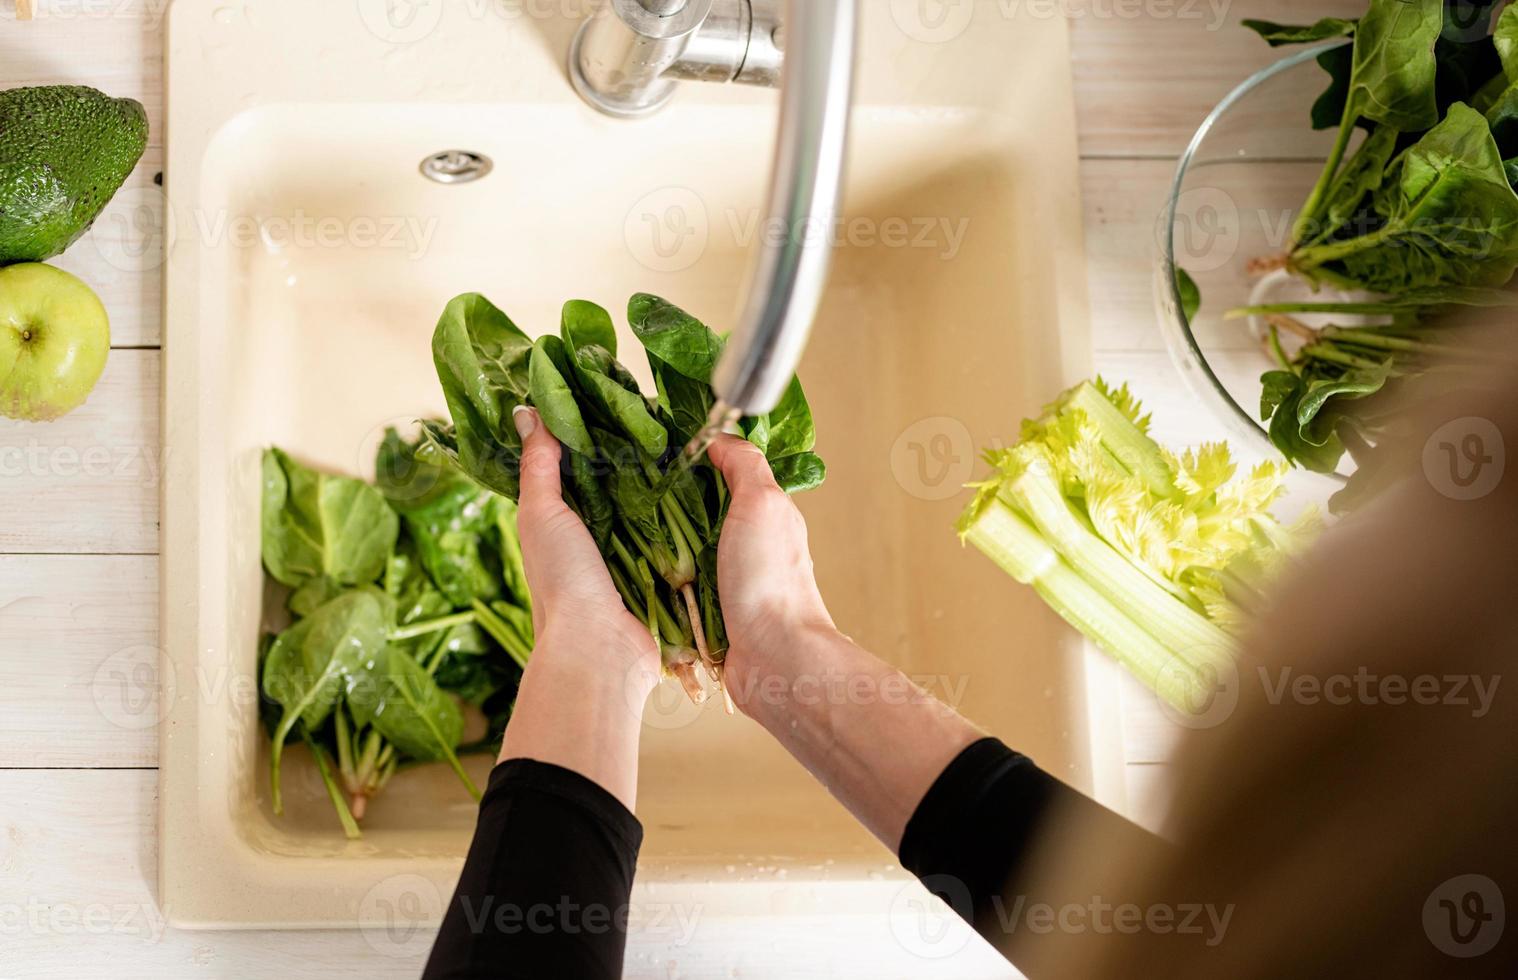 Vista superior de la mujer lavando las manos espinacas en el fregadero de la cocina foto